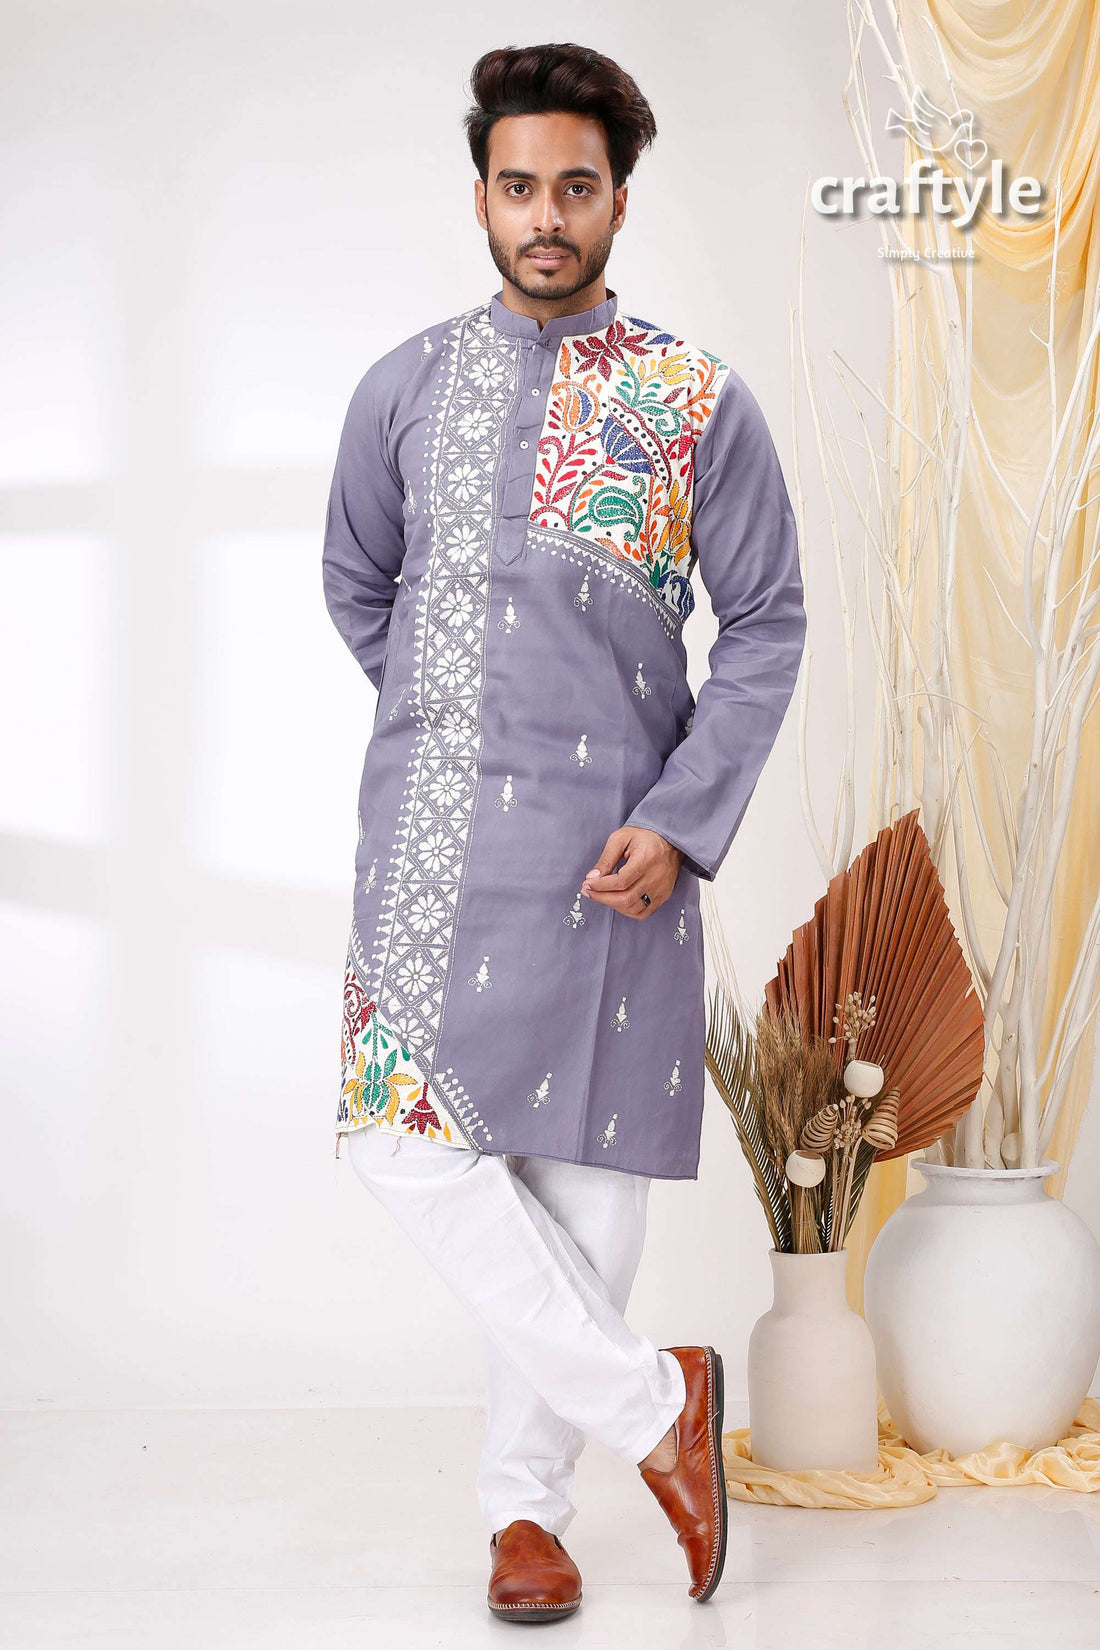 Storm Grey White Lotus Design Kantha Cotton Kurta Panjabi for Men - Craftyle